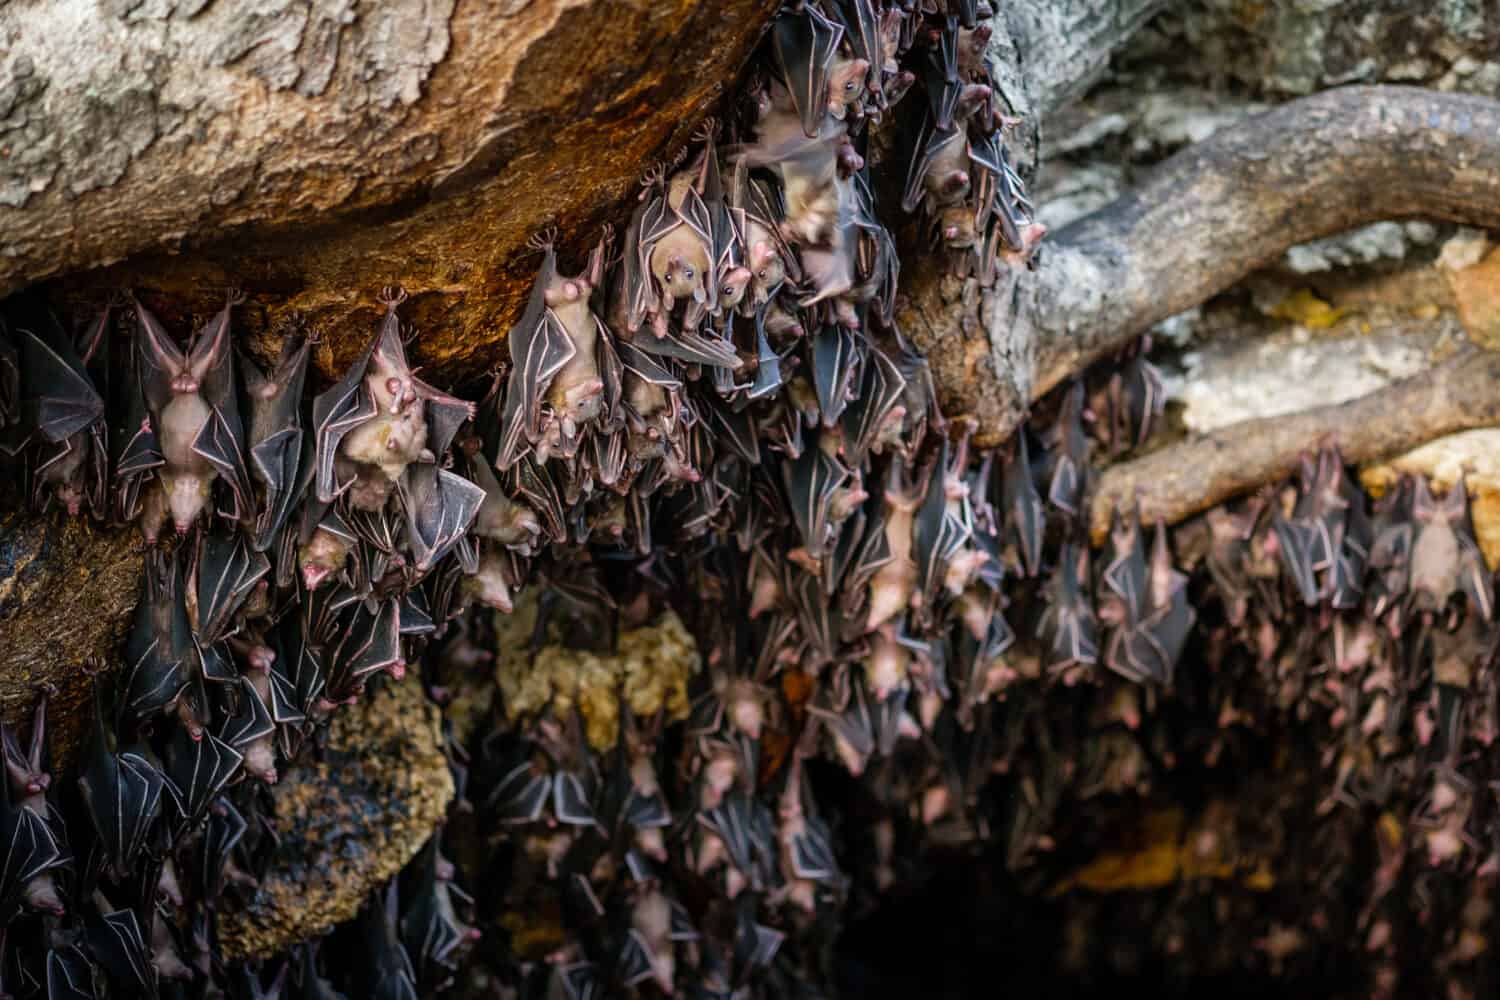 Fruits bats at Monfort bat cave - Davao, Philippines